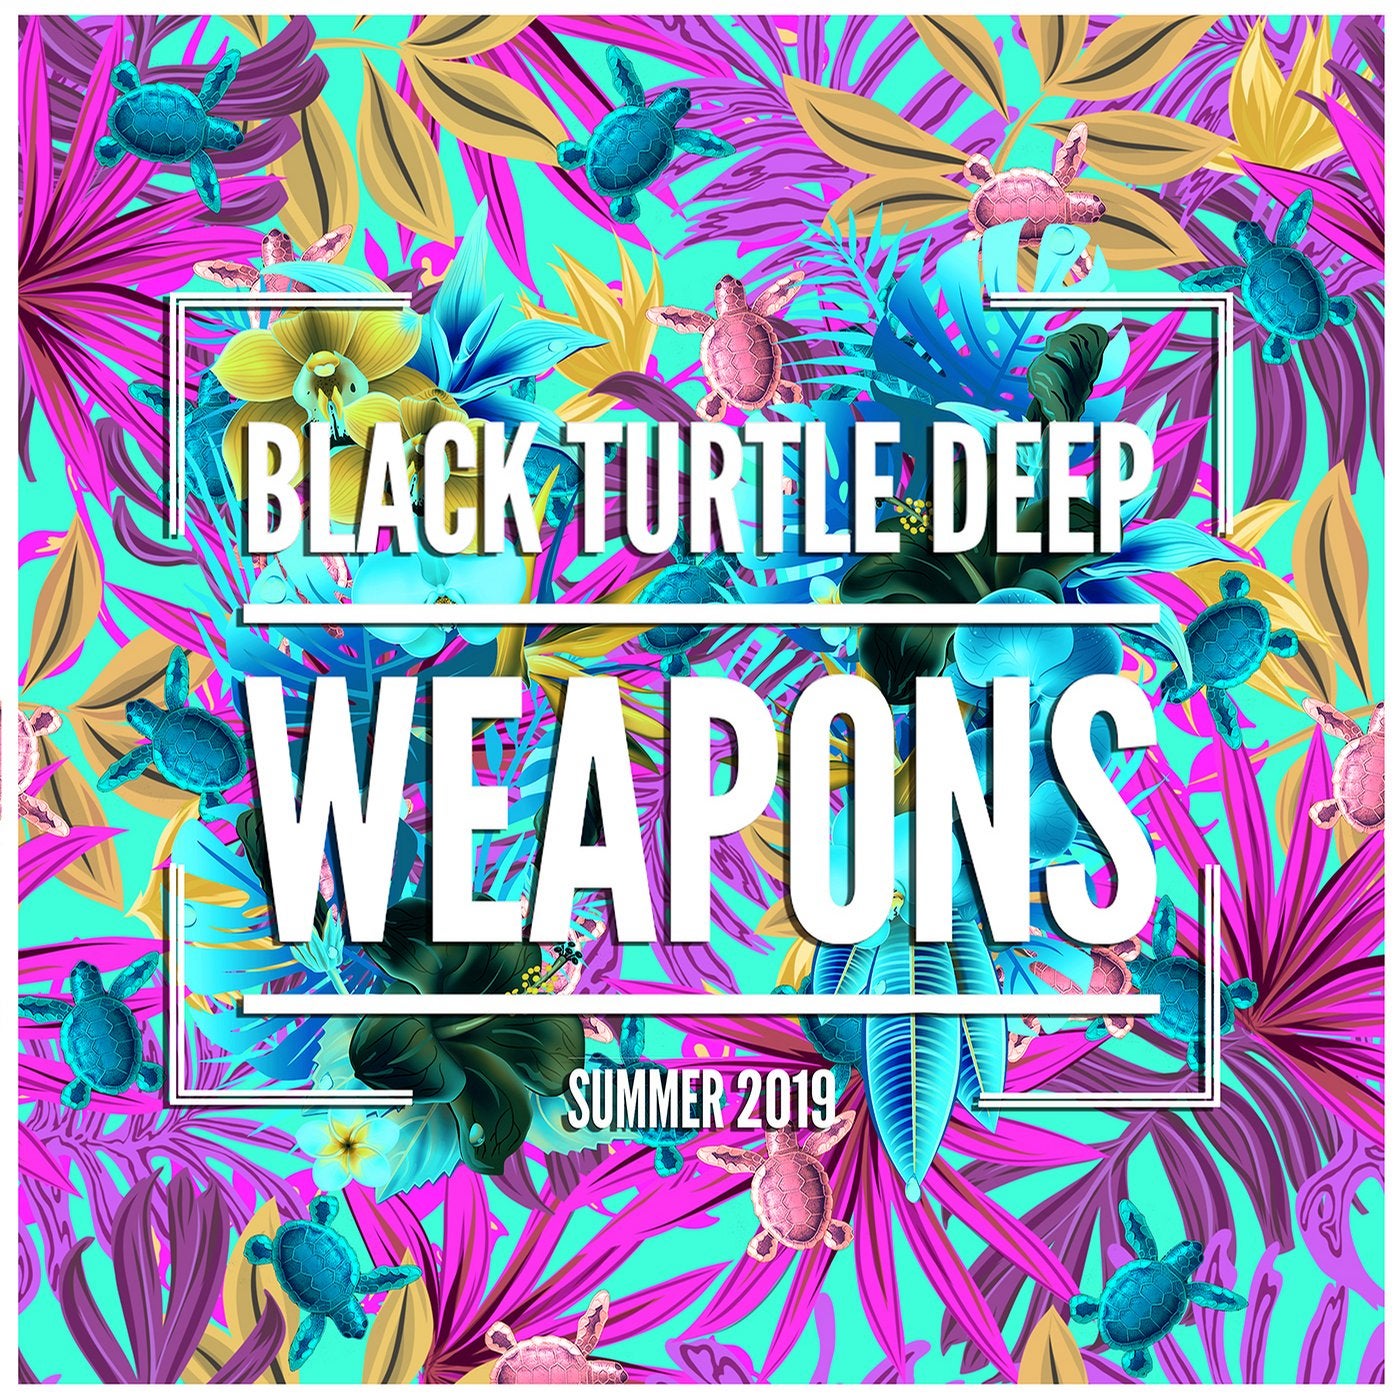 Black Turtle Deep Weapons Summer 2019